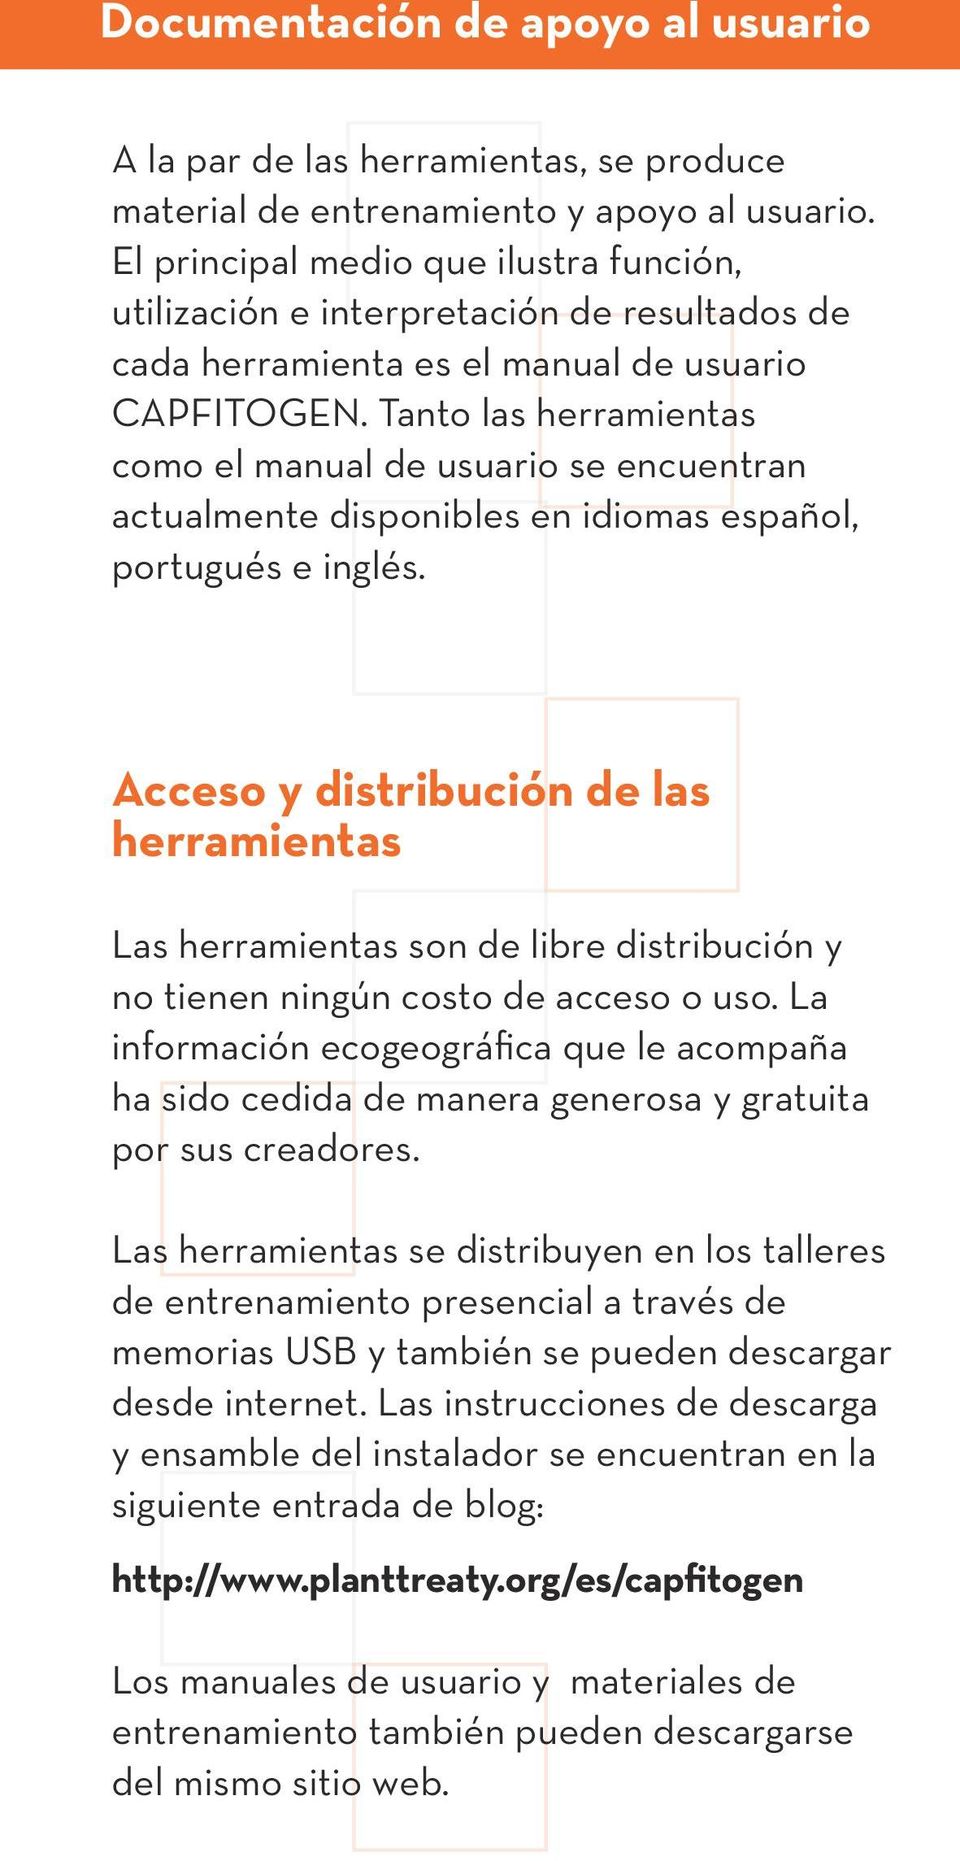 Tanto las herramientas como el manual de usuario se encuentran actualmente disponibles en idiomas español, portugués e inglés.